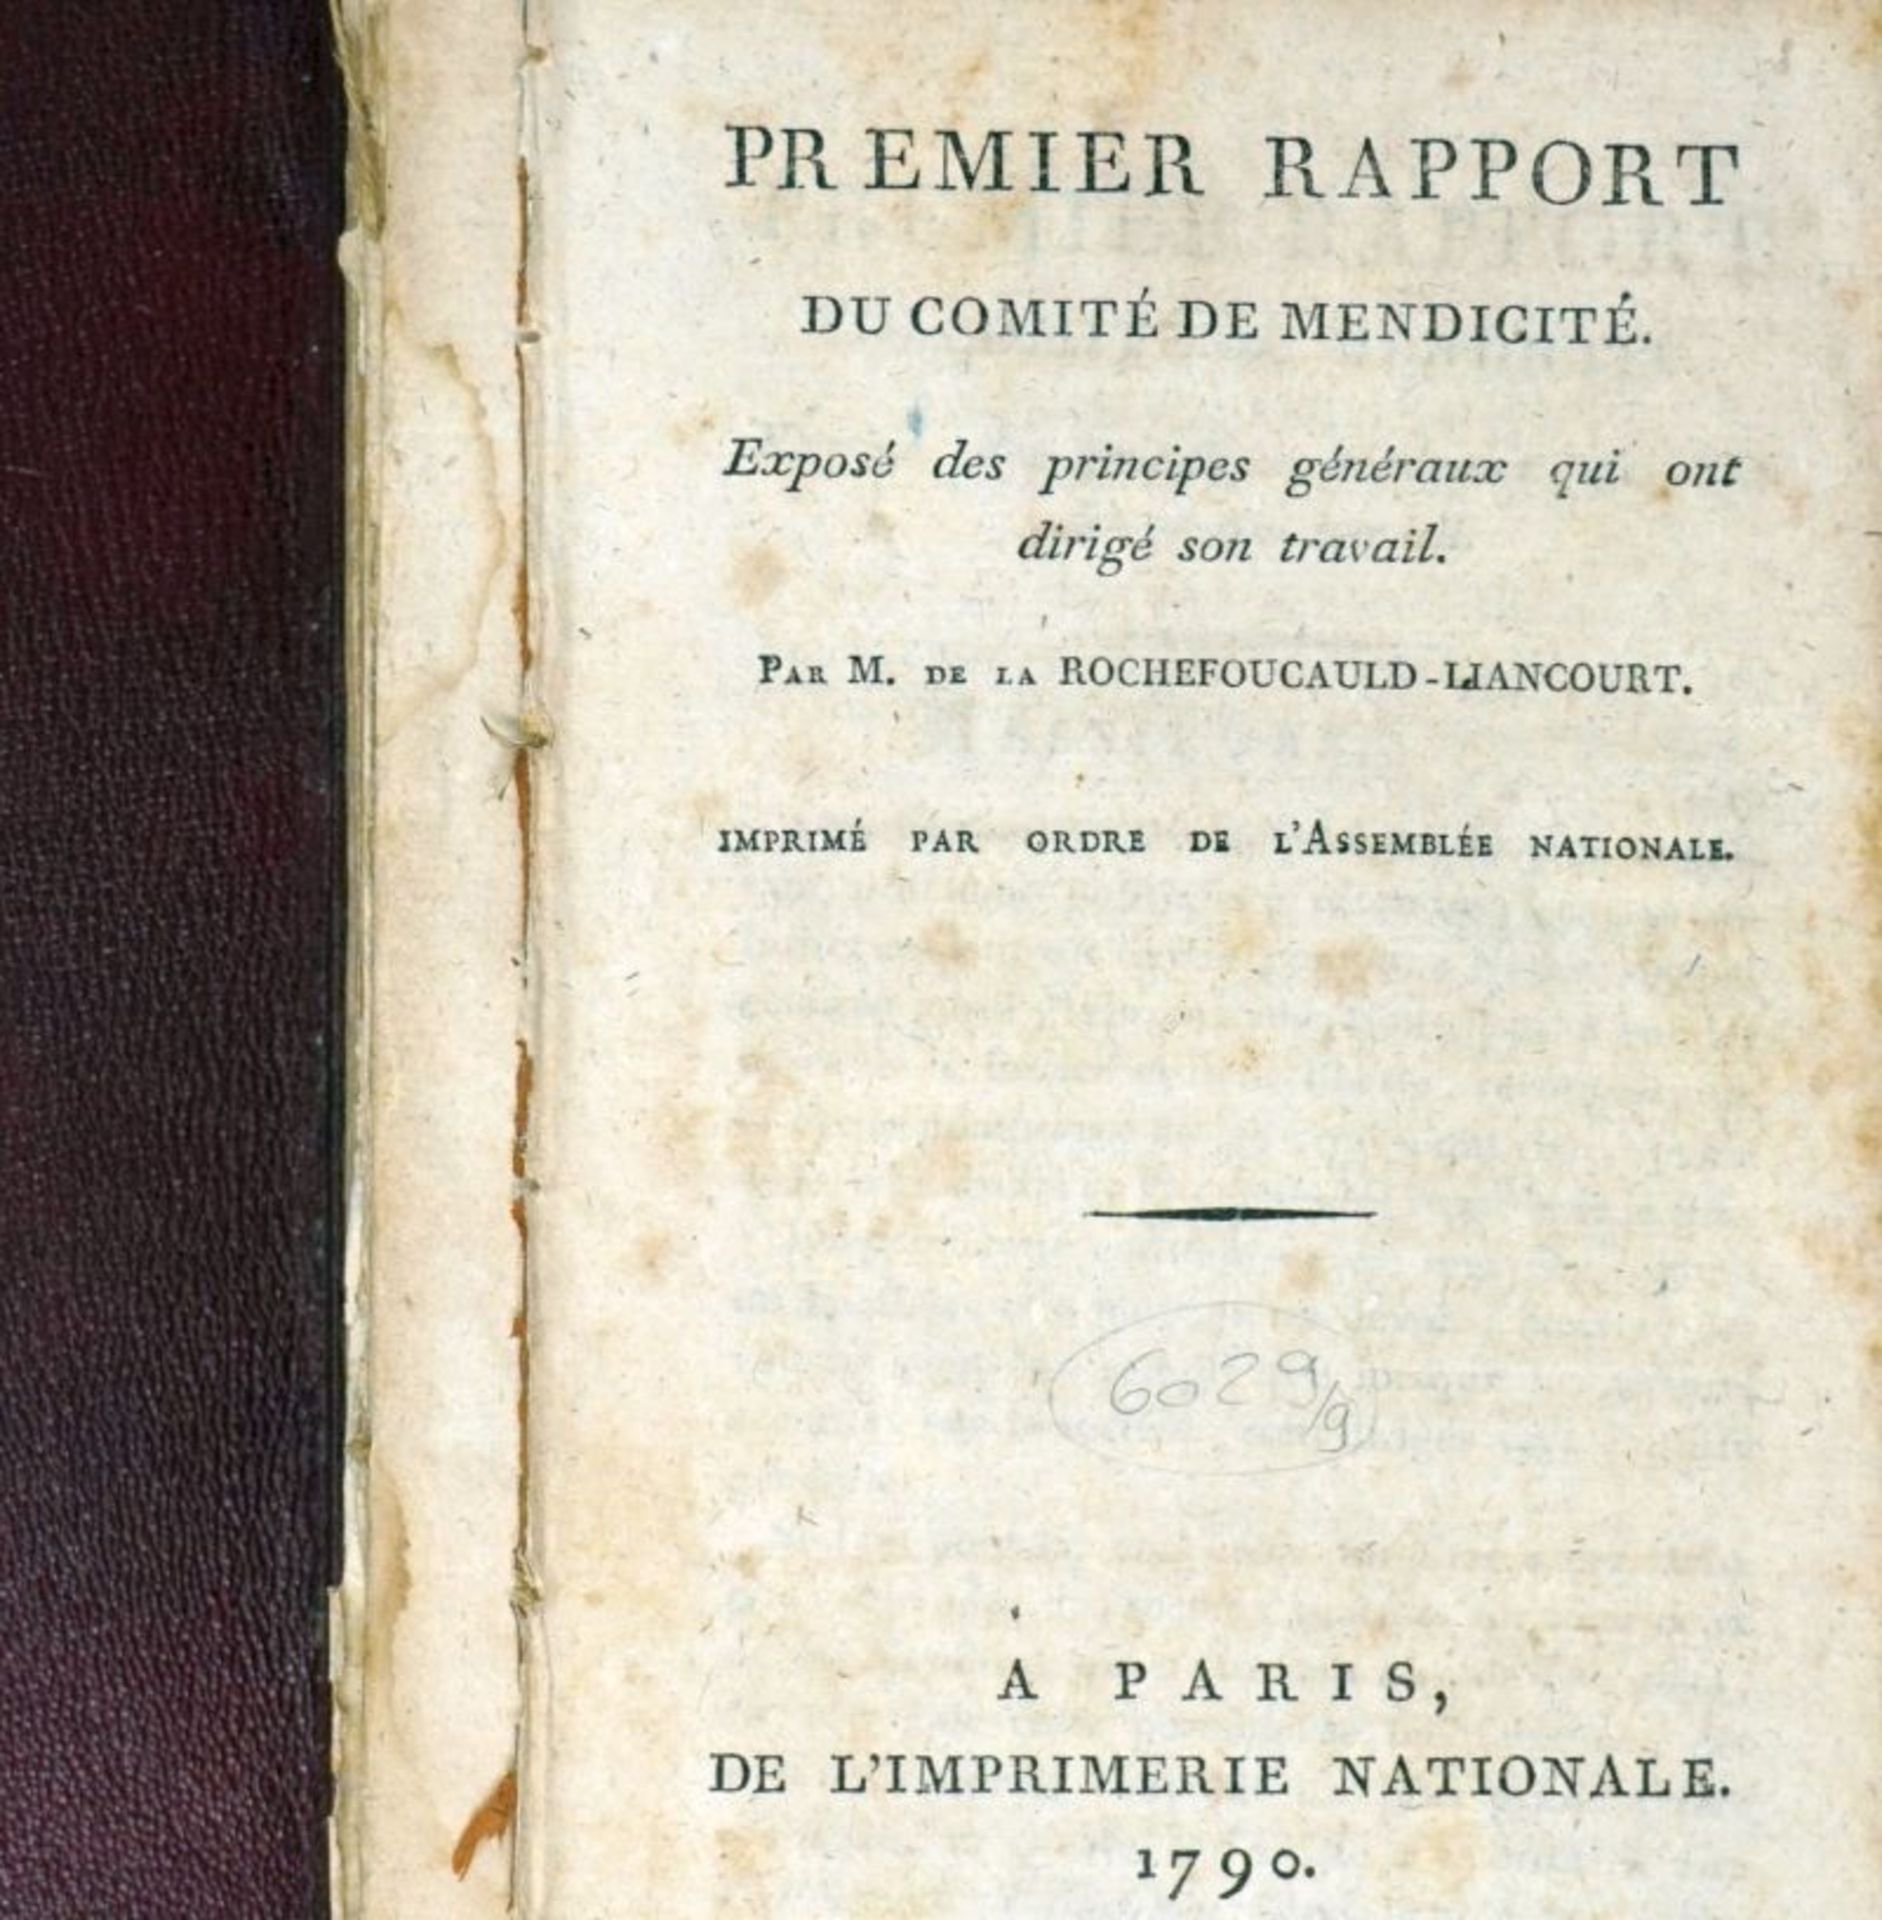 La Rochefoucauld-Liancourt, F. A. F...: Plan de travail du comité